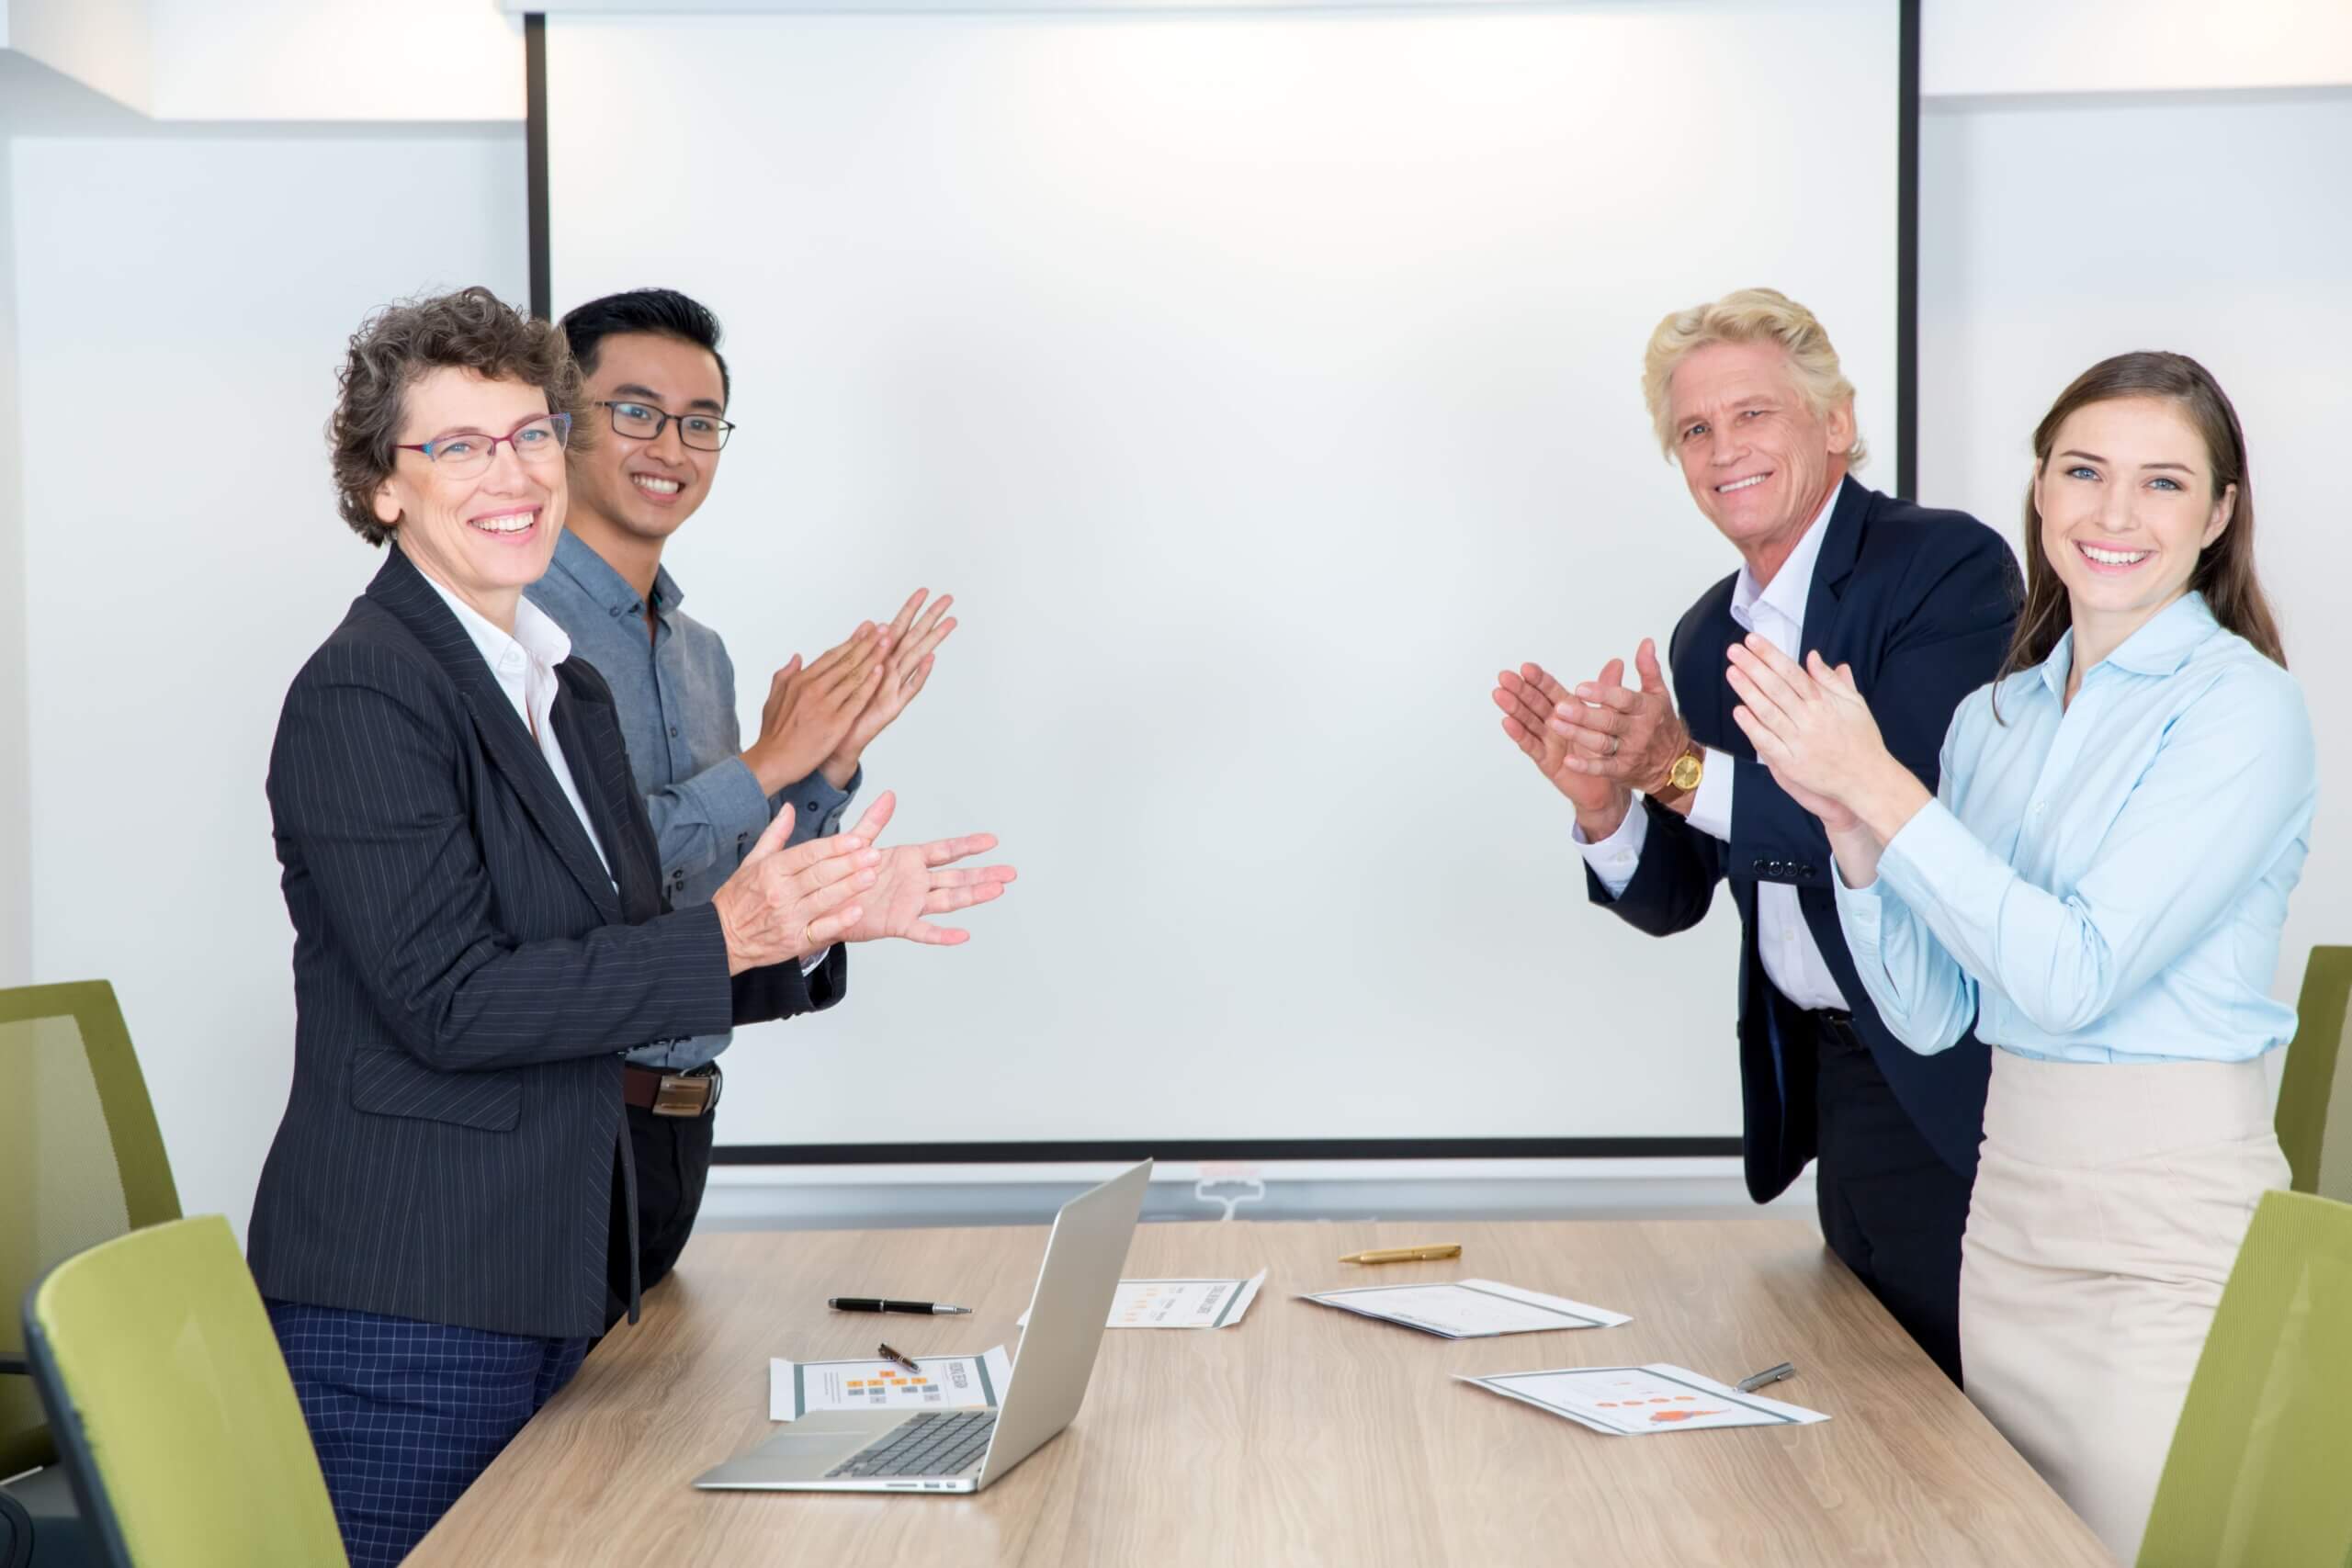 Как сделать презентацию сложного технического продукта для бизнеса | Фото four partners applauding in conference room 1 1 scaled